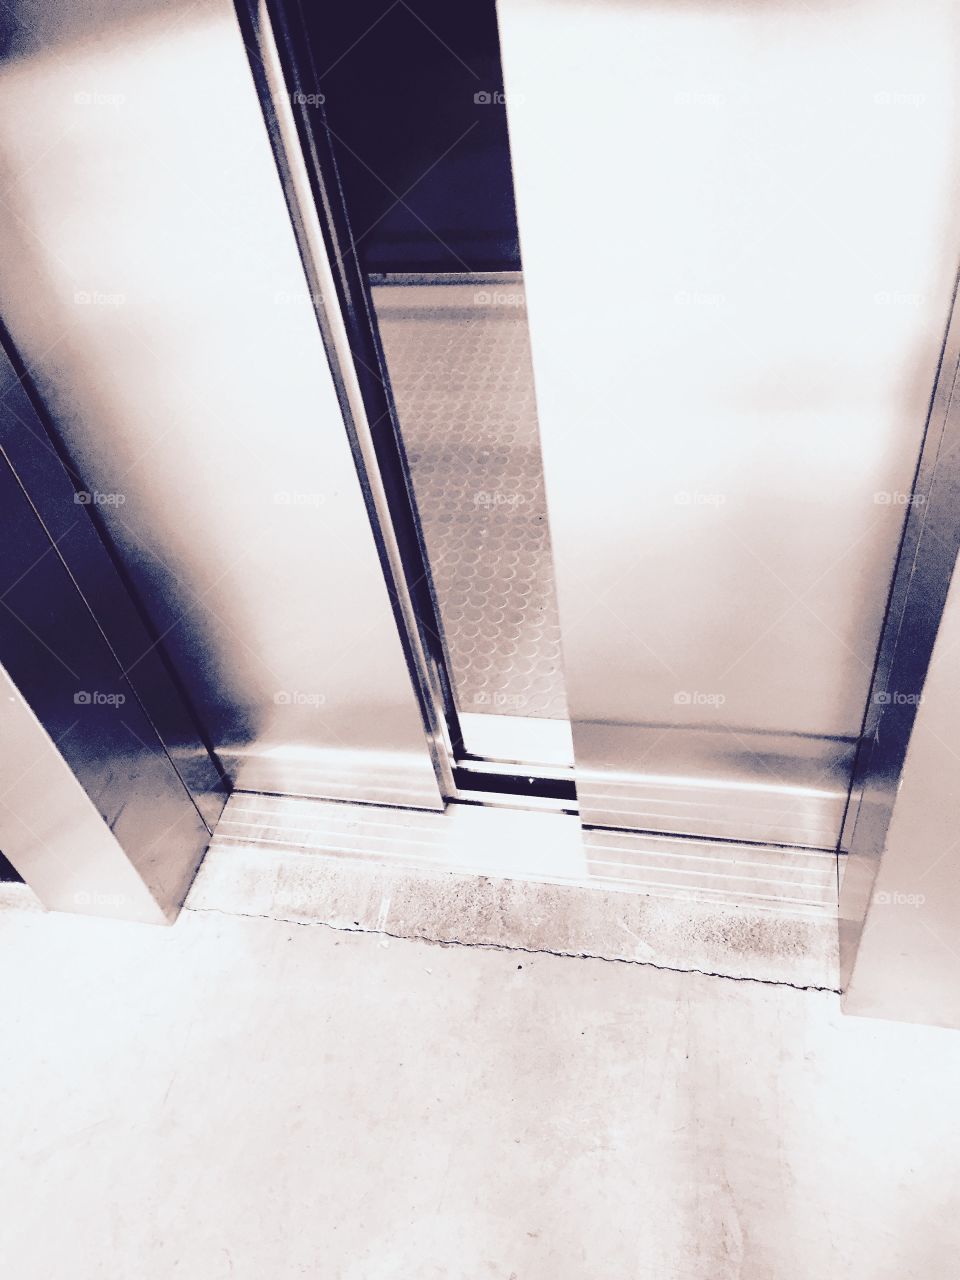 Lift ajar. Opening doors of a lift.